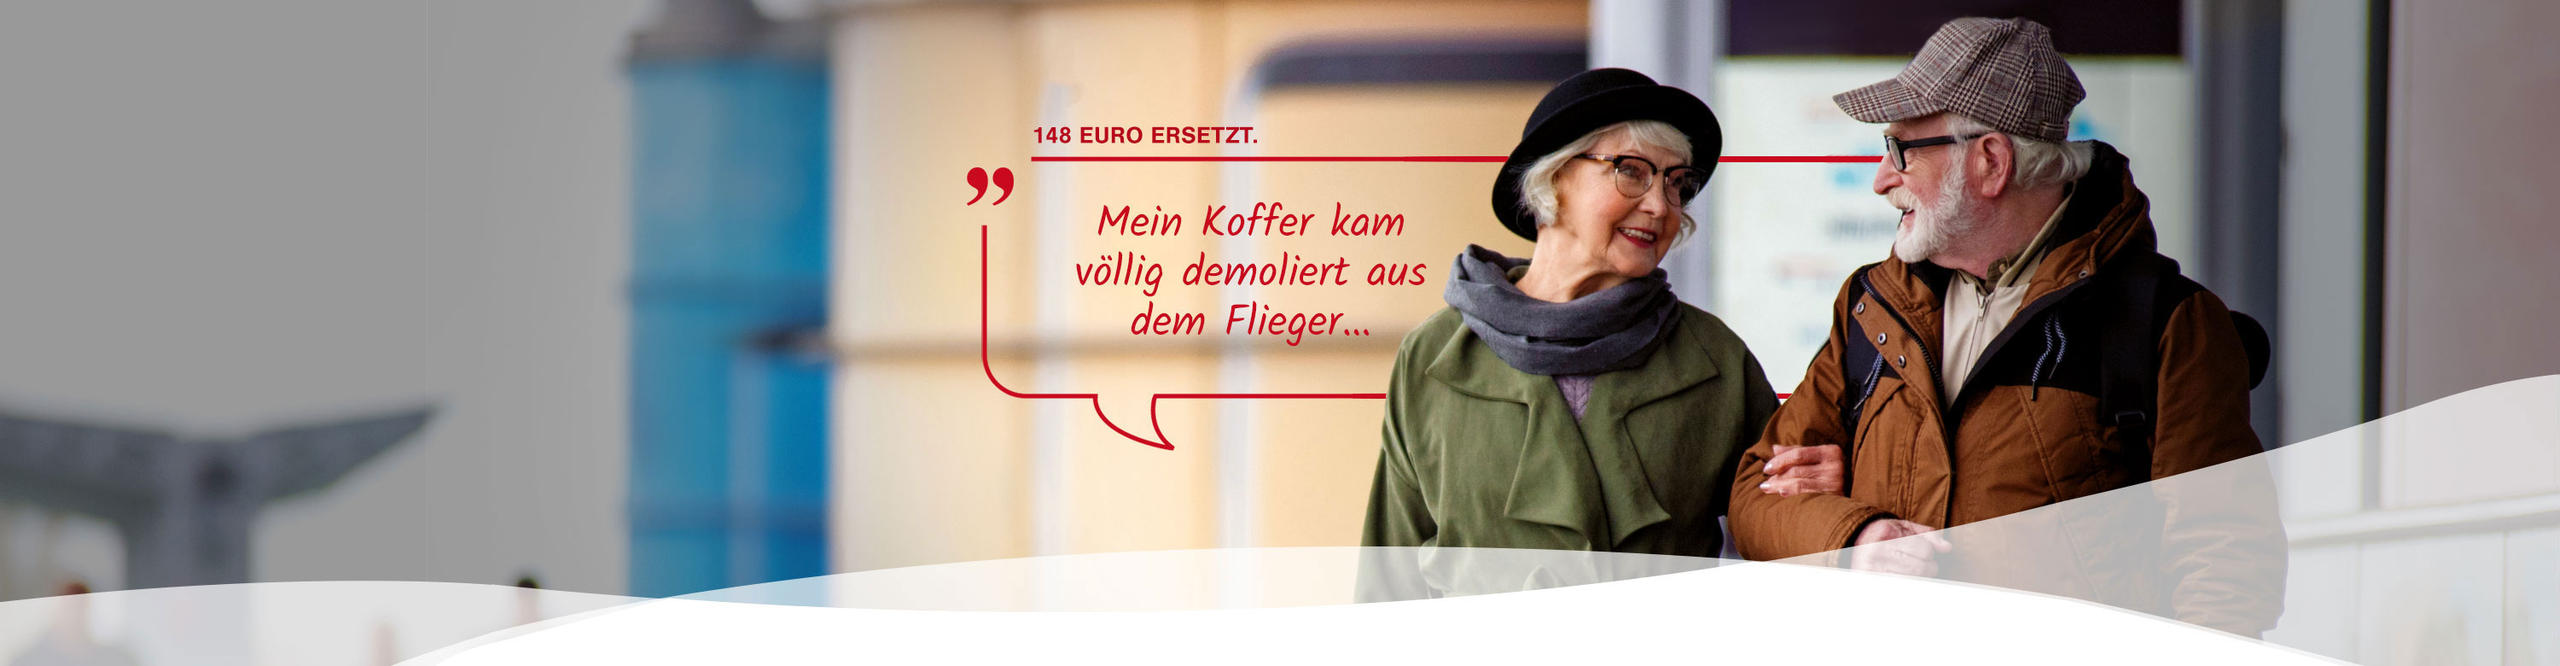 Älteres Paar mit Sprechblase: Mein Koffer kam völlig demoliert aus dem Flieger ... 148 Euro ersetzt.